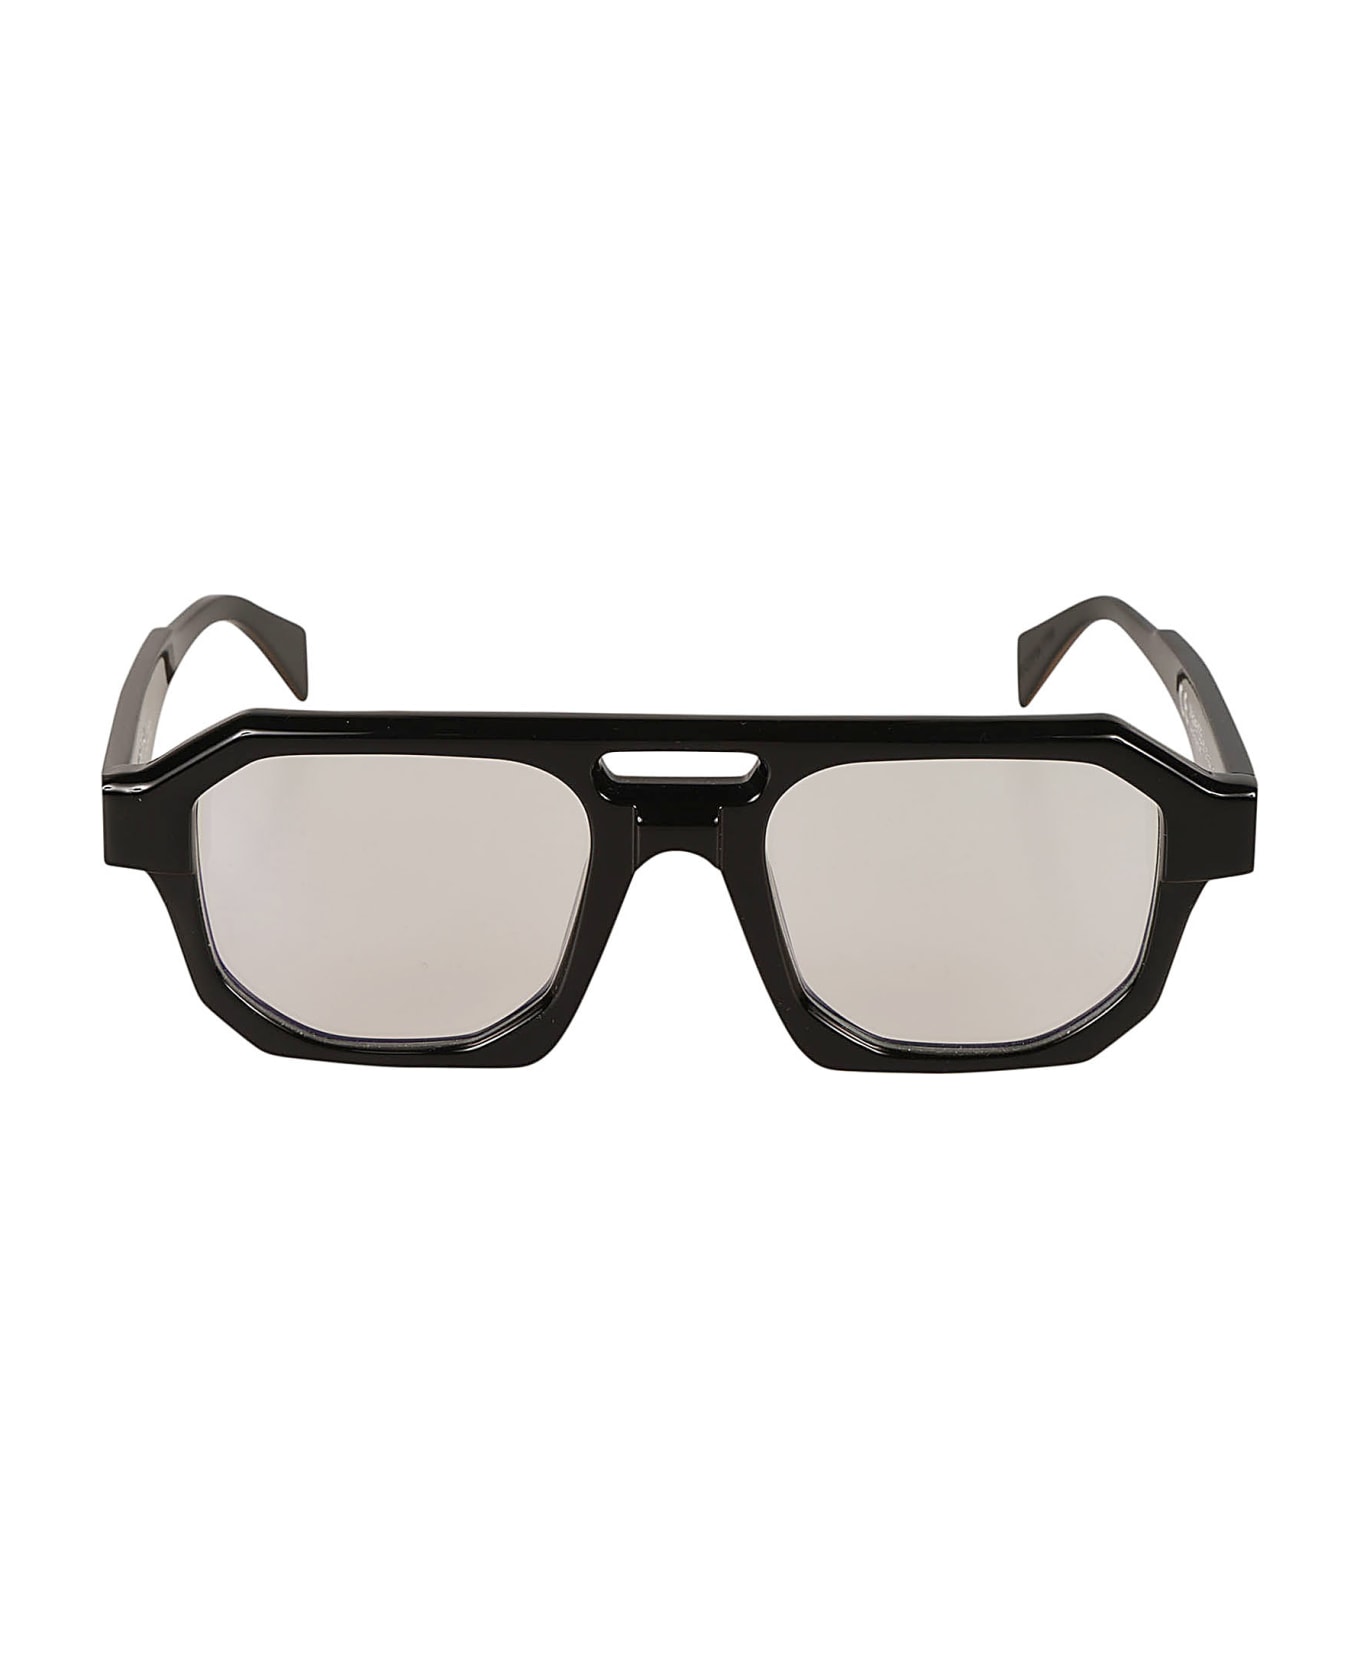 Kuboraum K33 Glasses Glasses - black